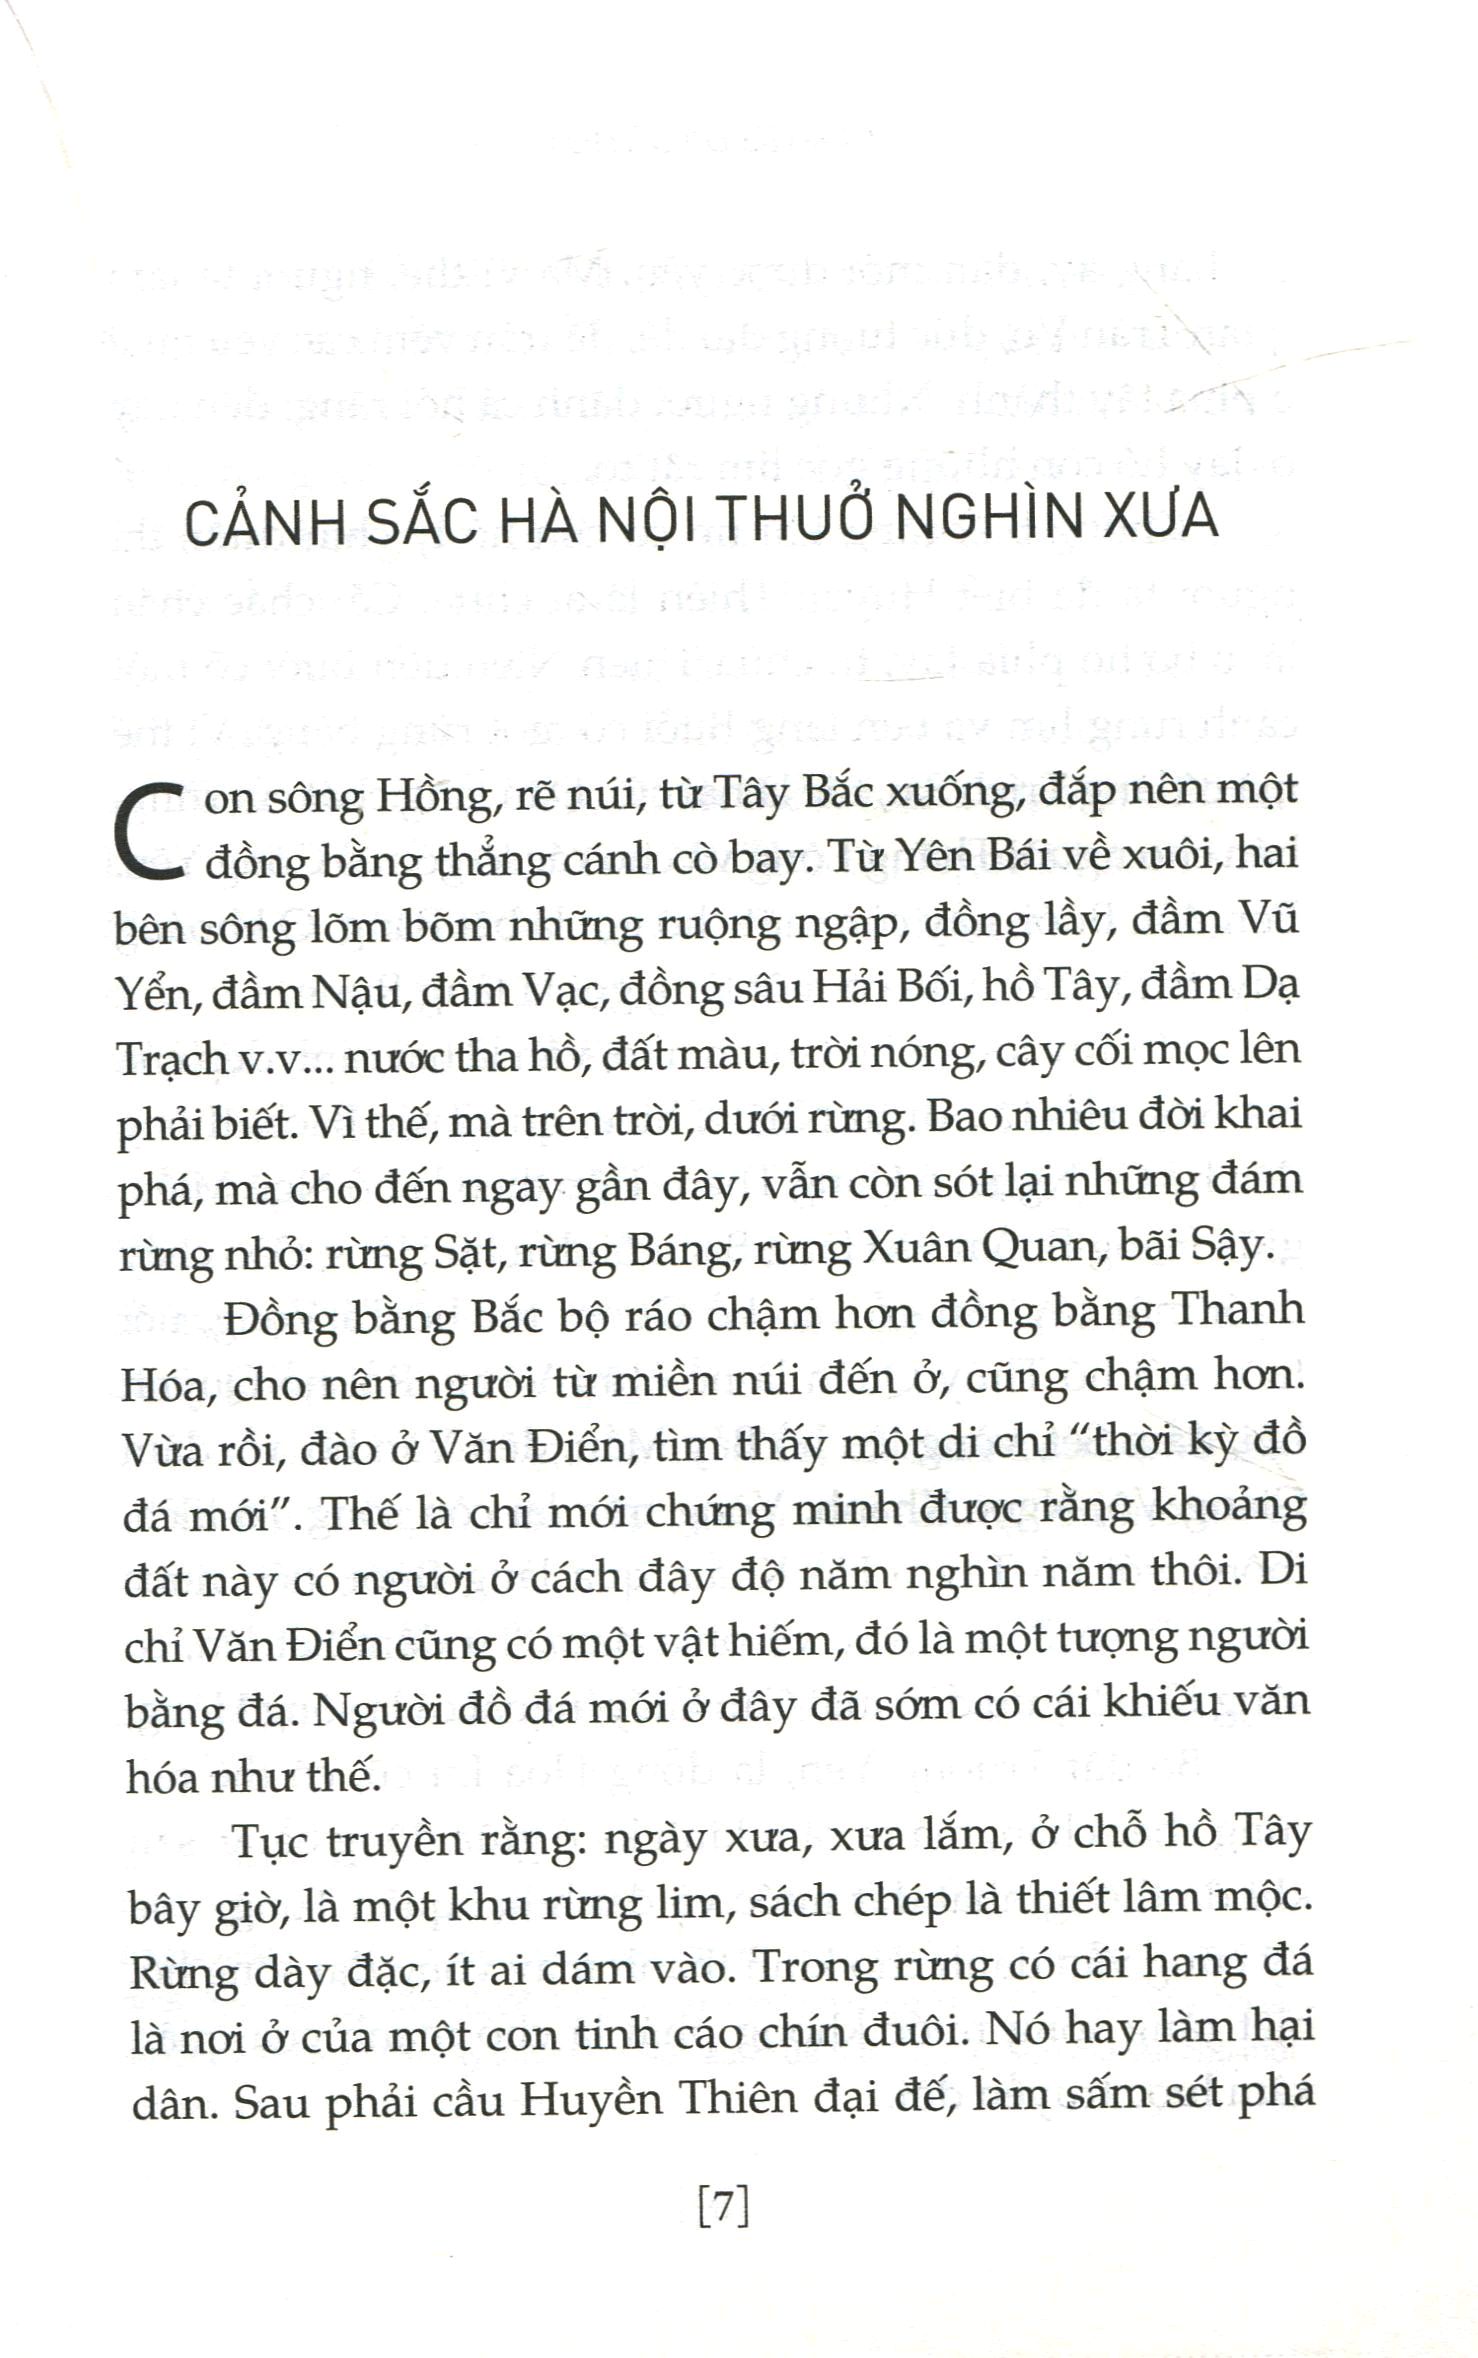 Phố Phường Hà Nội Xưa PDF